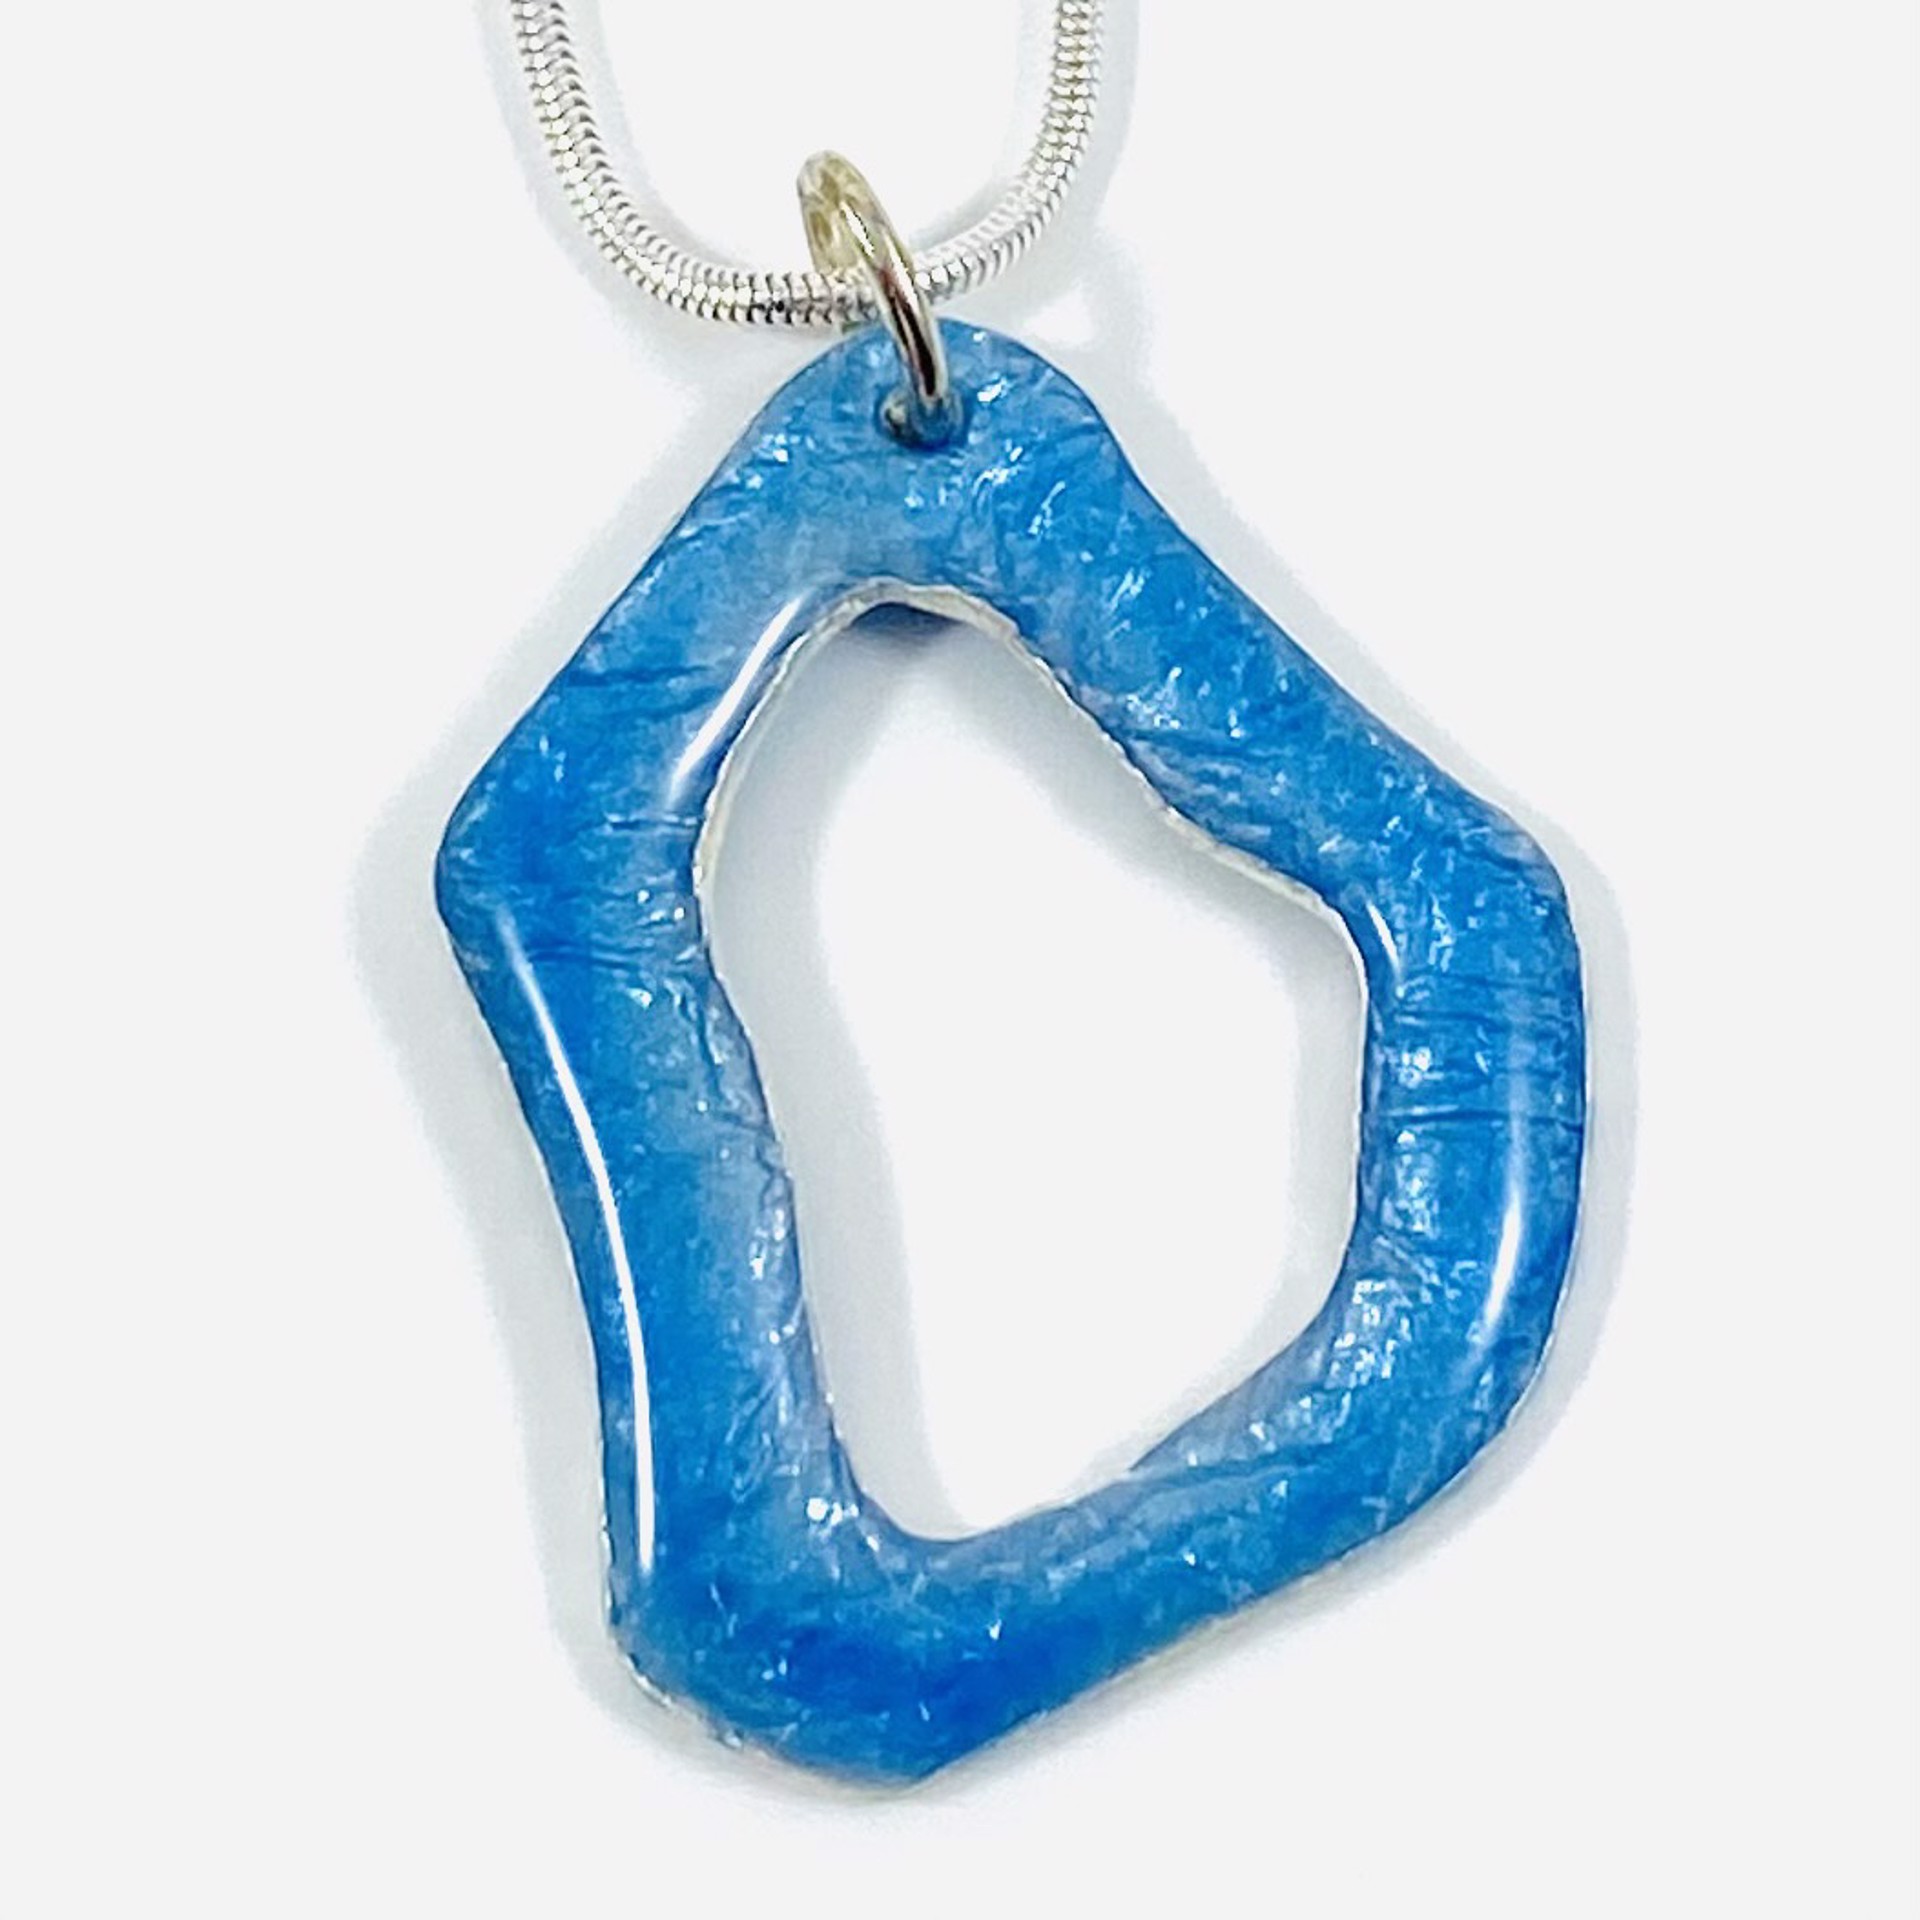 KH21-3 Champleve` Blue Enamel Pendant (Lg) on 18"Sterling Chain by Karen Hakim